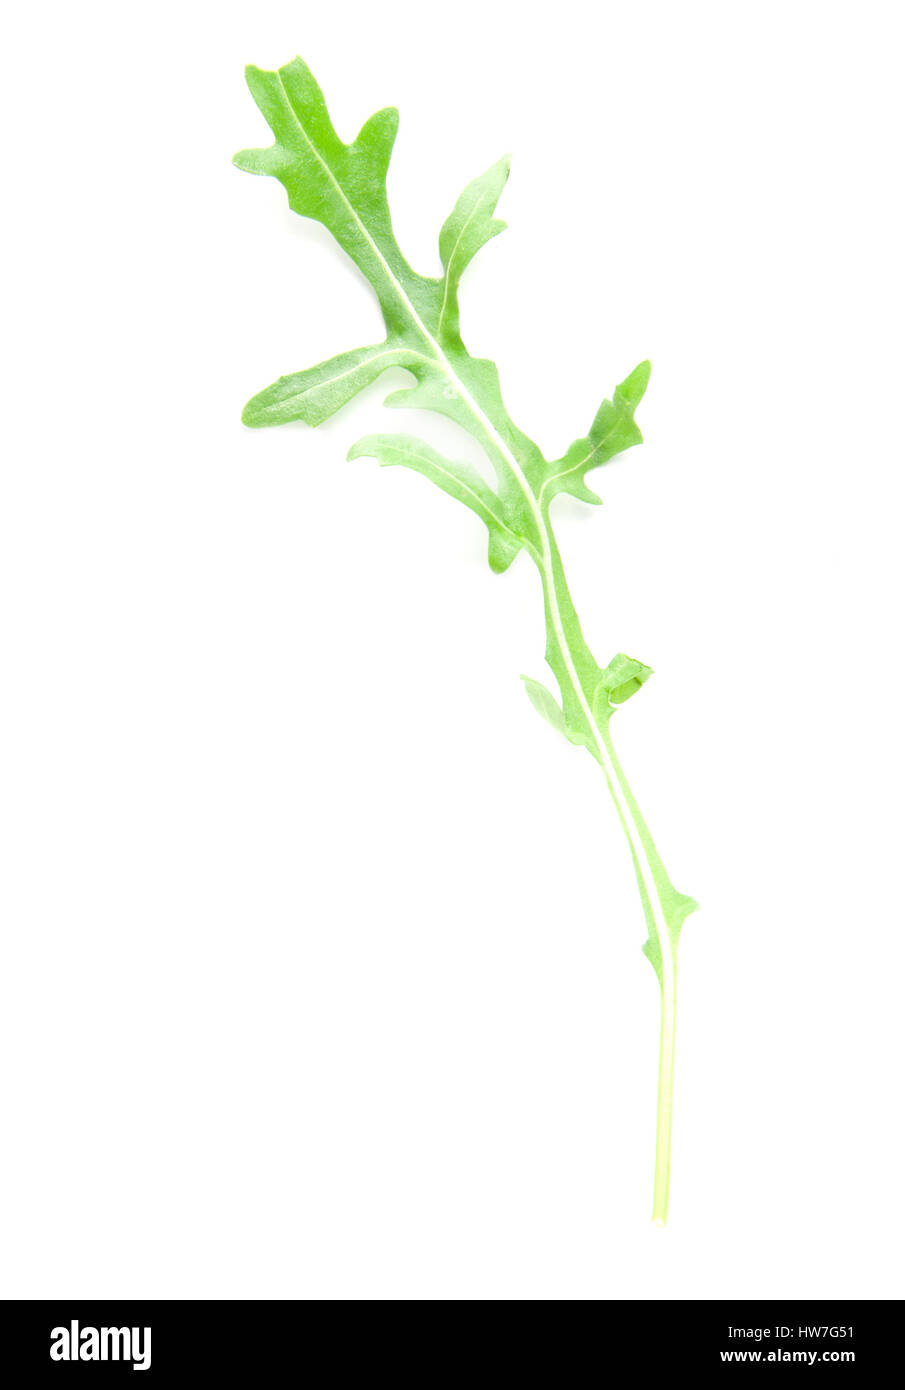 fresh arugula leaves on white background Stock Photo